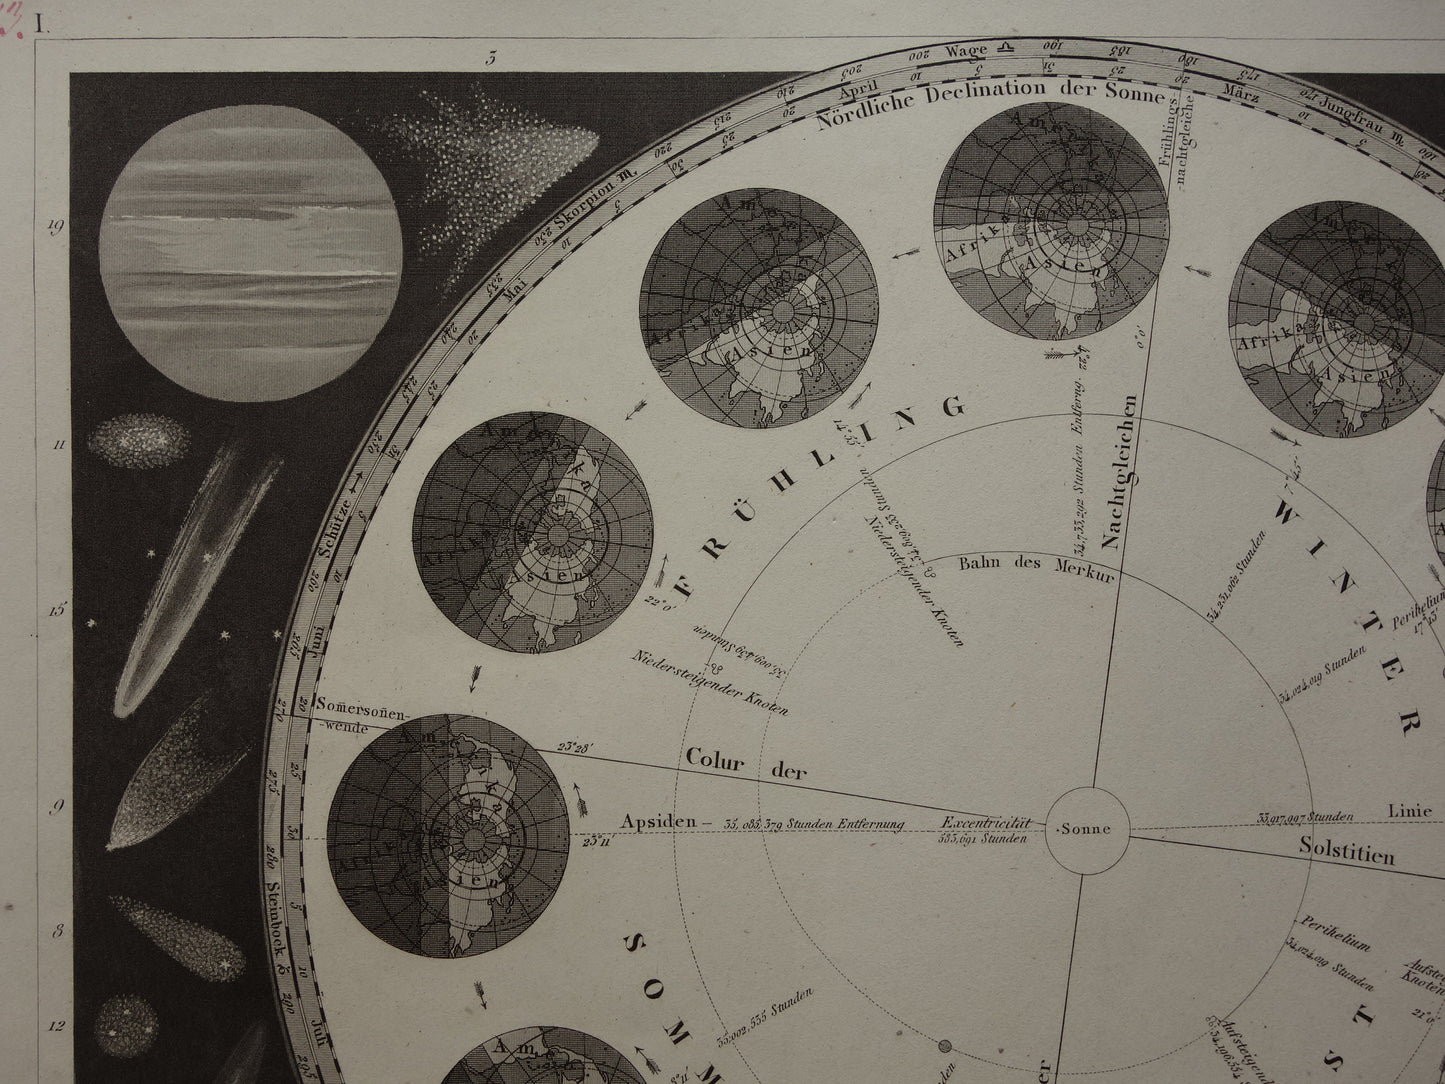 Antieke astronomie prent Aarde baan om de Zon seizoenen 1849 originele 170+ jaar oude print vintage astronomische illustratie